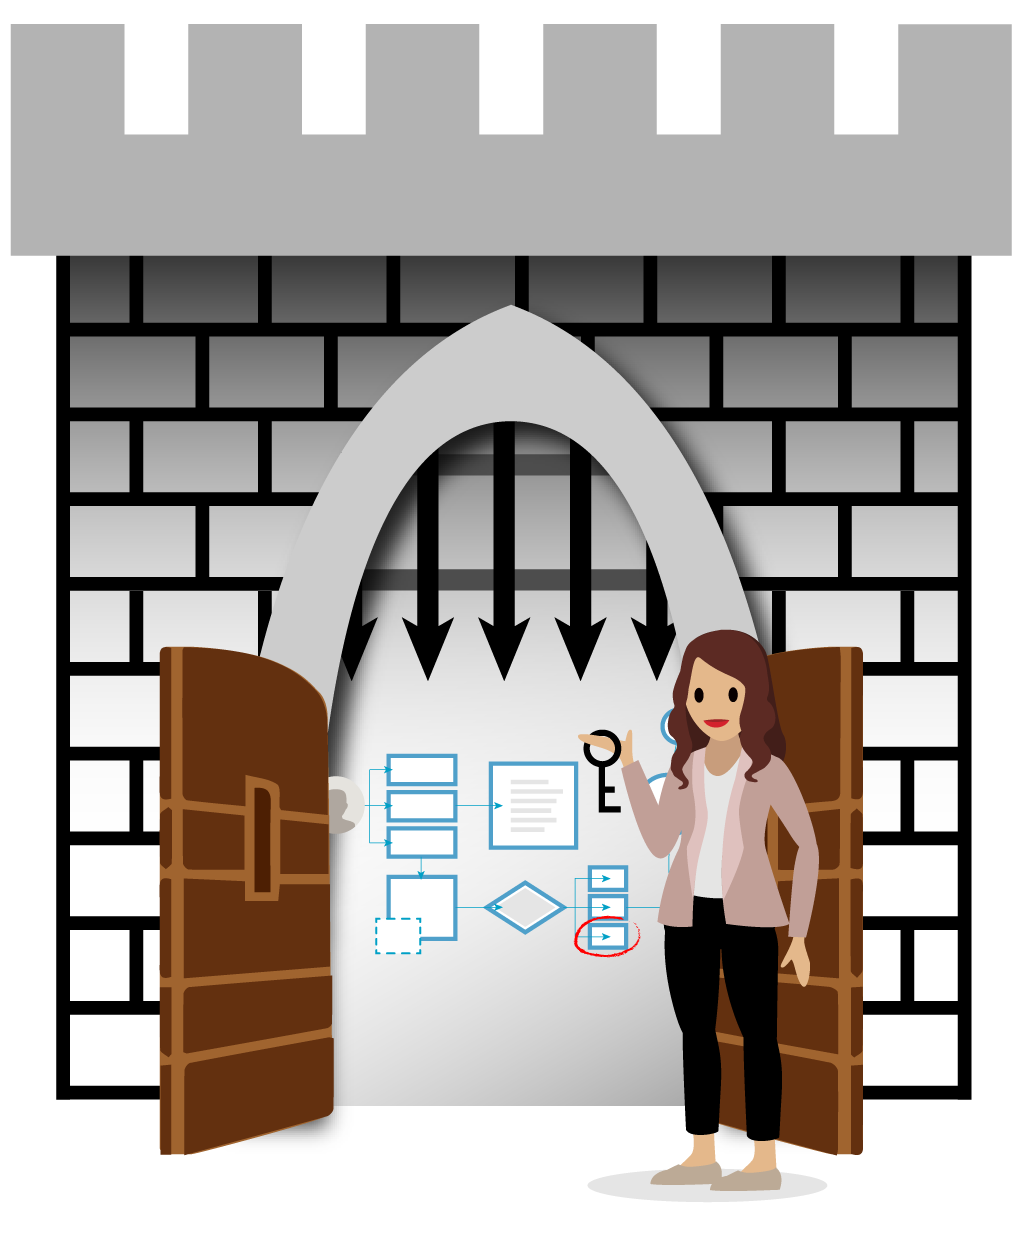 要塞化された城の入り口で、システム図の前で城の鍵を持っている特権ユーザー。